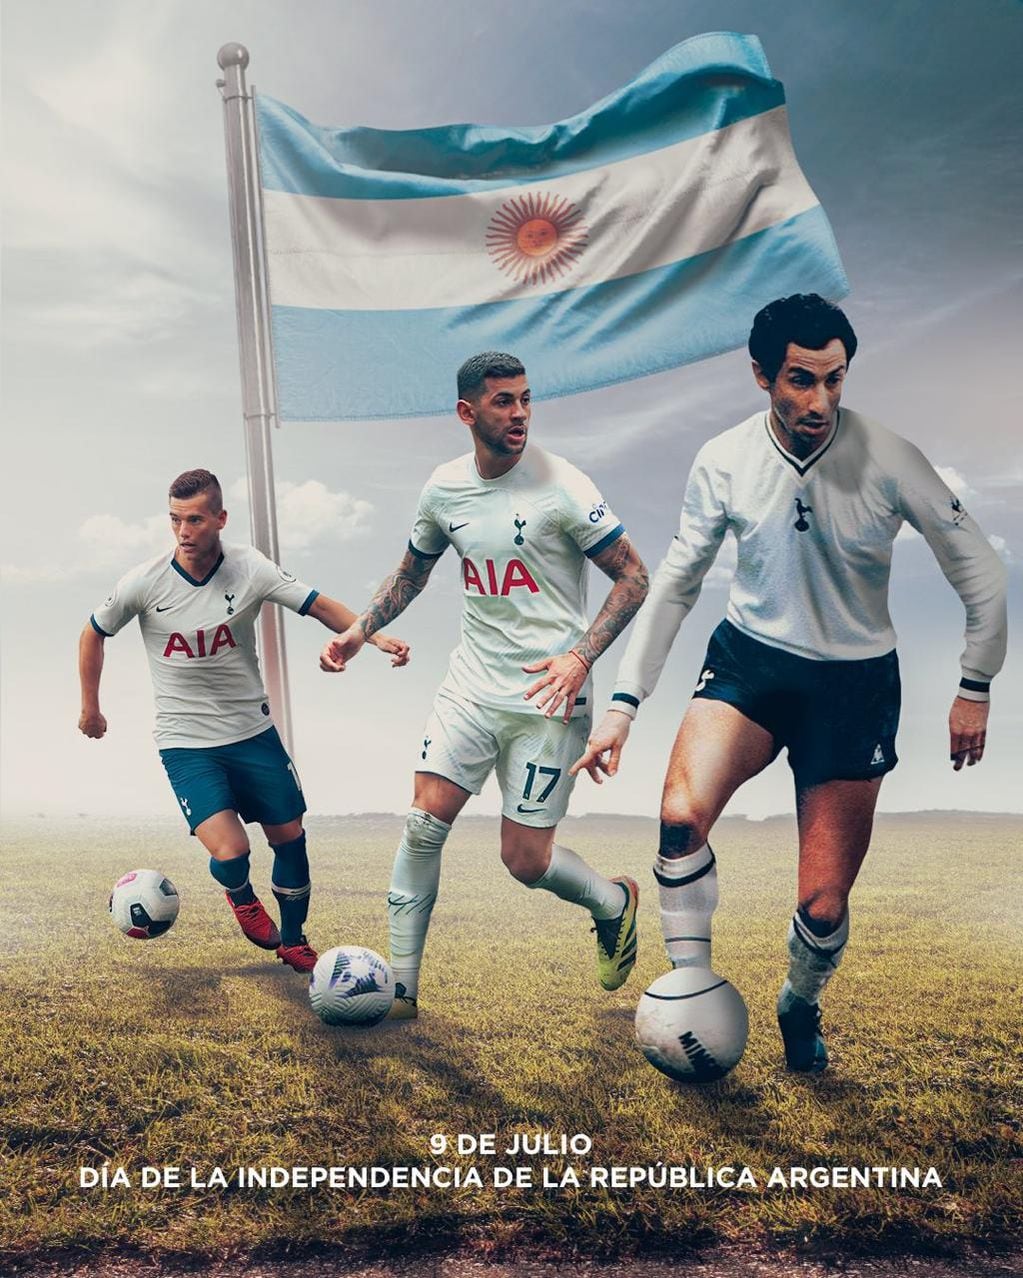 Romero, Ardiles y Lo Celso, los argentinos seleccionados por Tottenham por el Día de la Independencia.